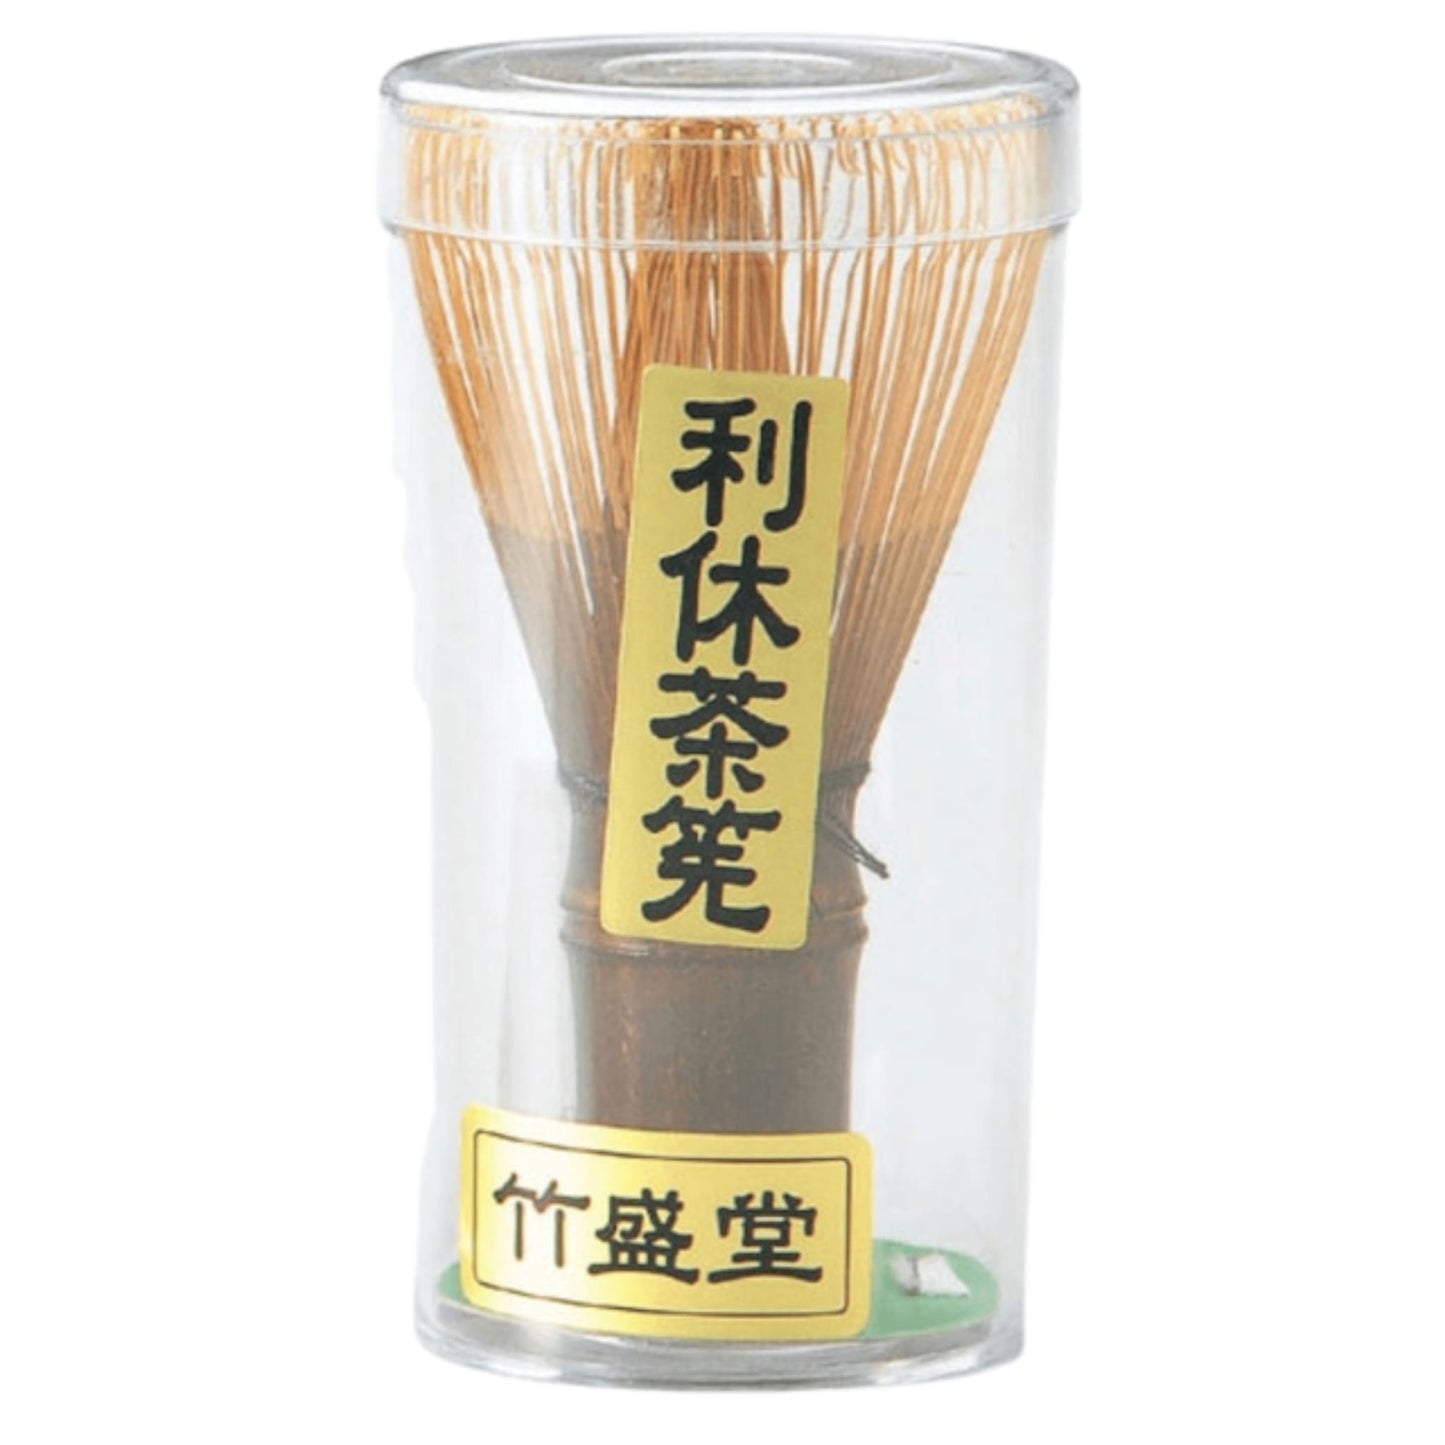 茶筅 - 種類 利休茶筅 竹盛堂 茶道具